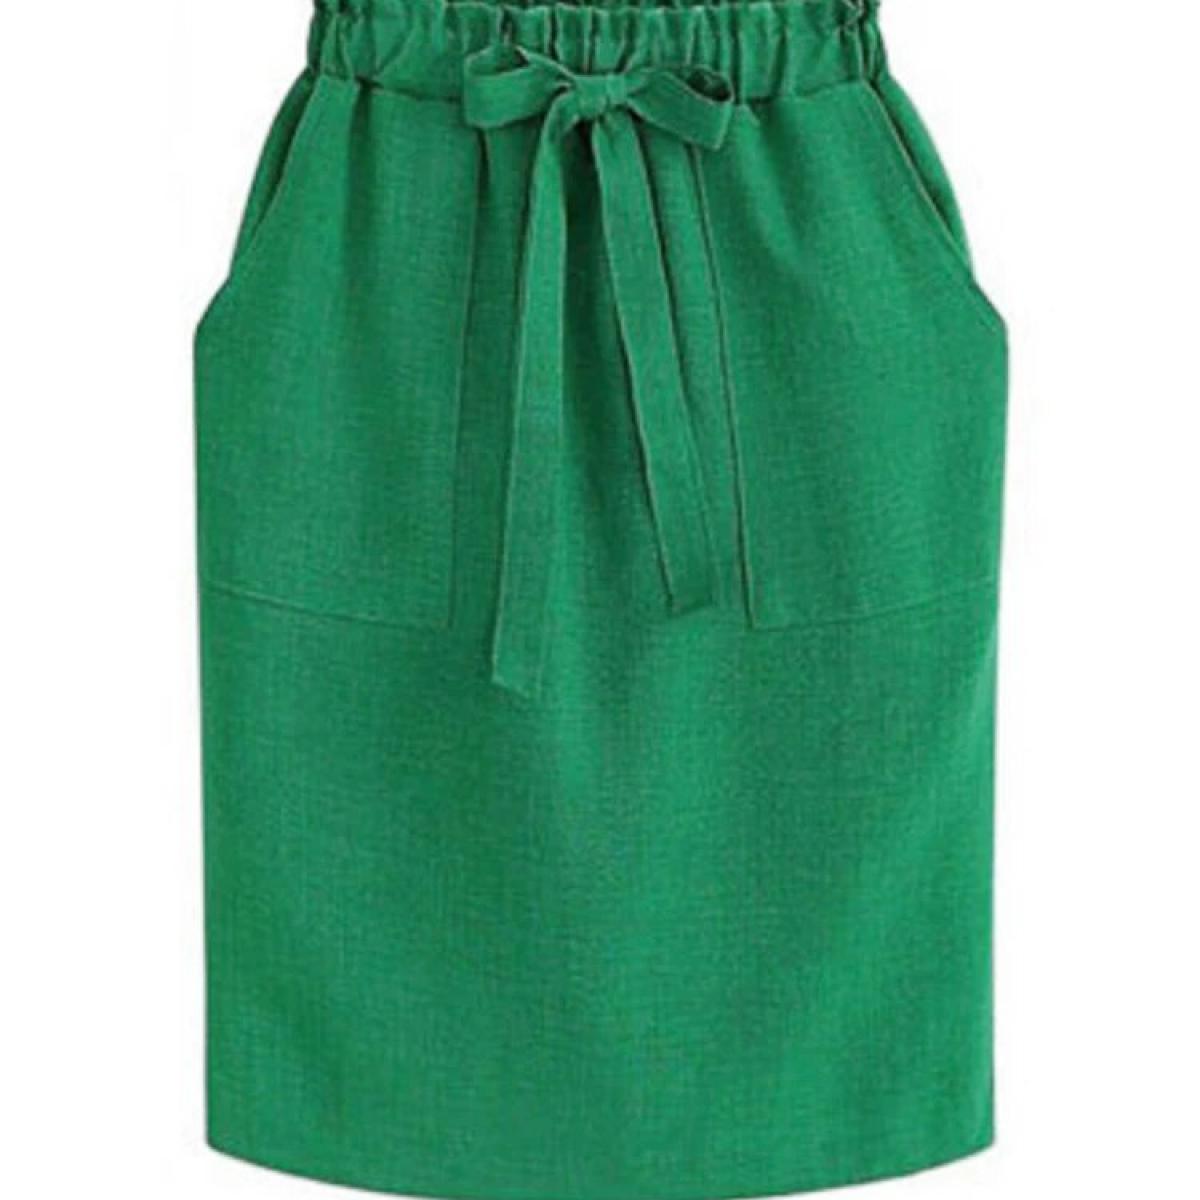 Verão outono elegante midi saias das mulheres escritório lápis saia algodão elástico cintura pacote hip saia arco verde esqui